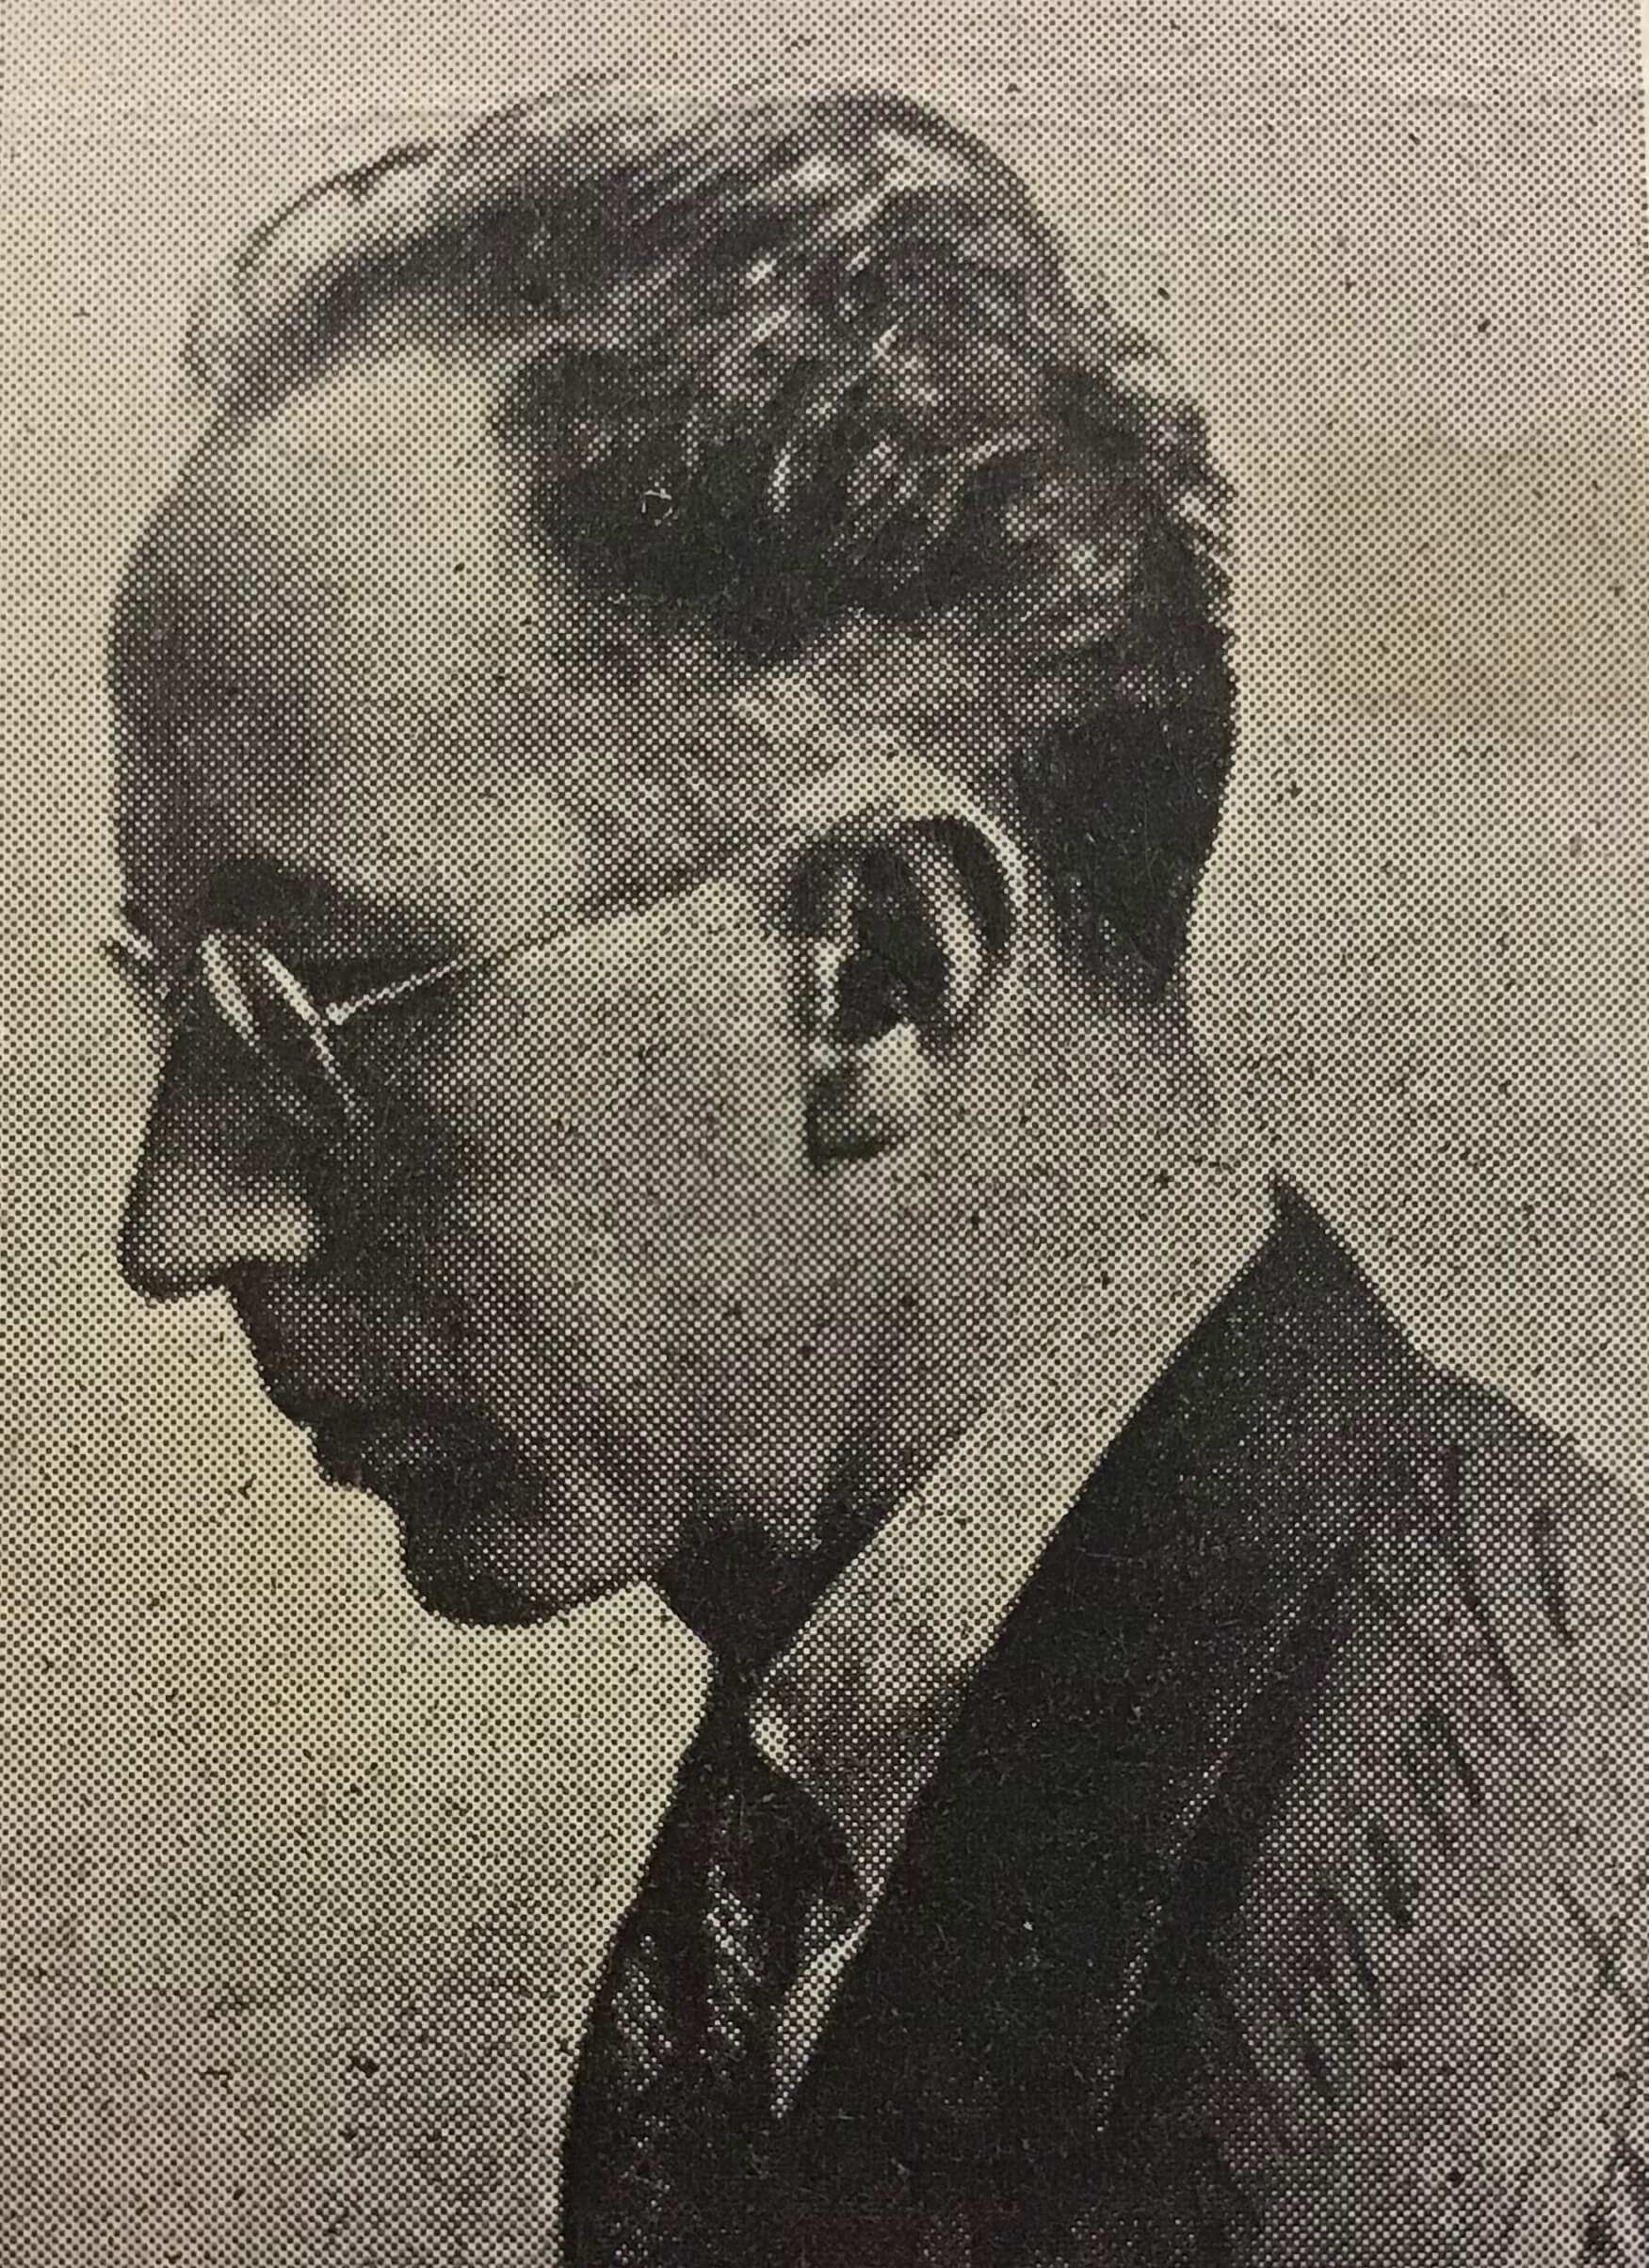 Retrato de perfil de Alonso Restrepo Moreno (Medellín, 1893-1955).